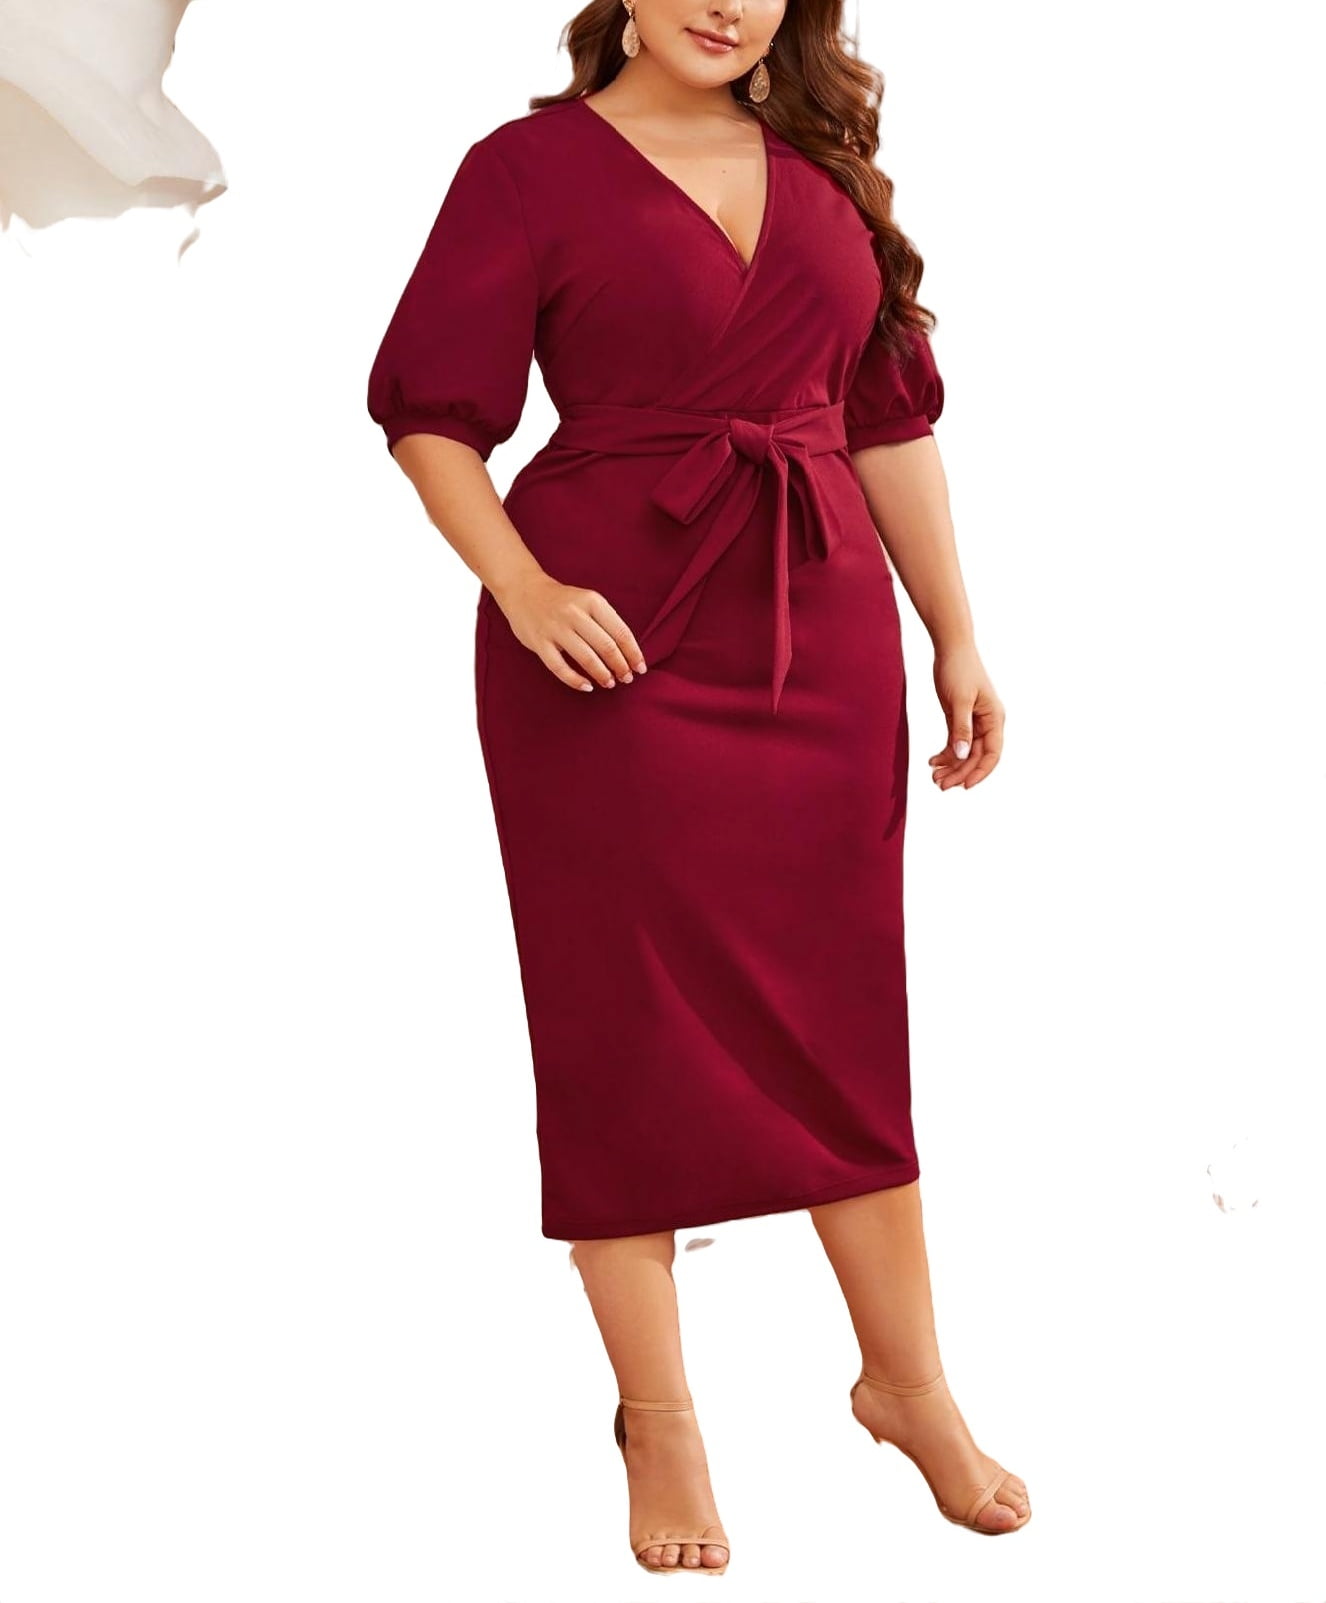 Buy Burgundy Dresses for Women by Rare Online | Ajio.com